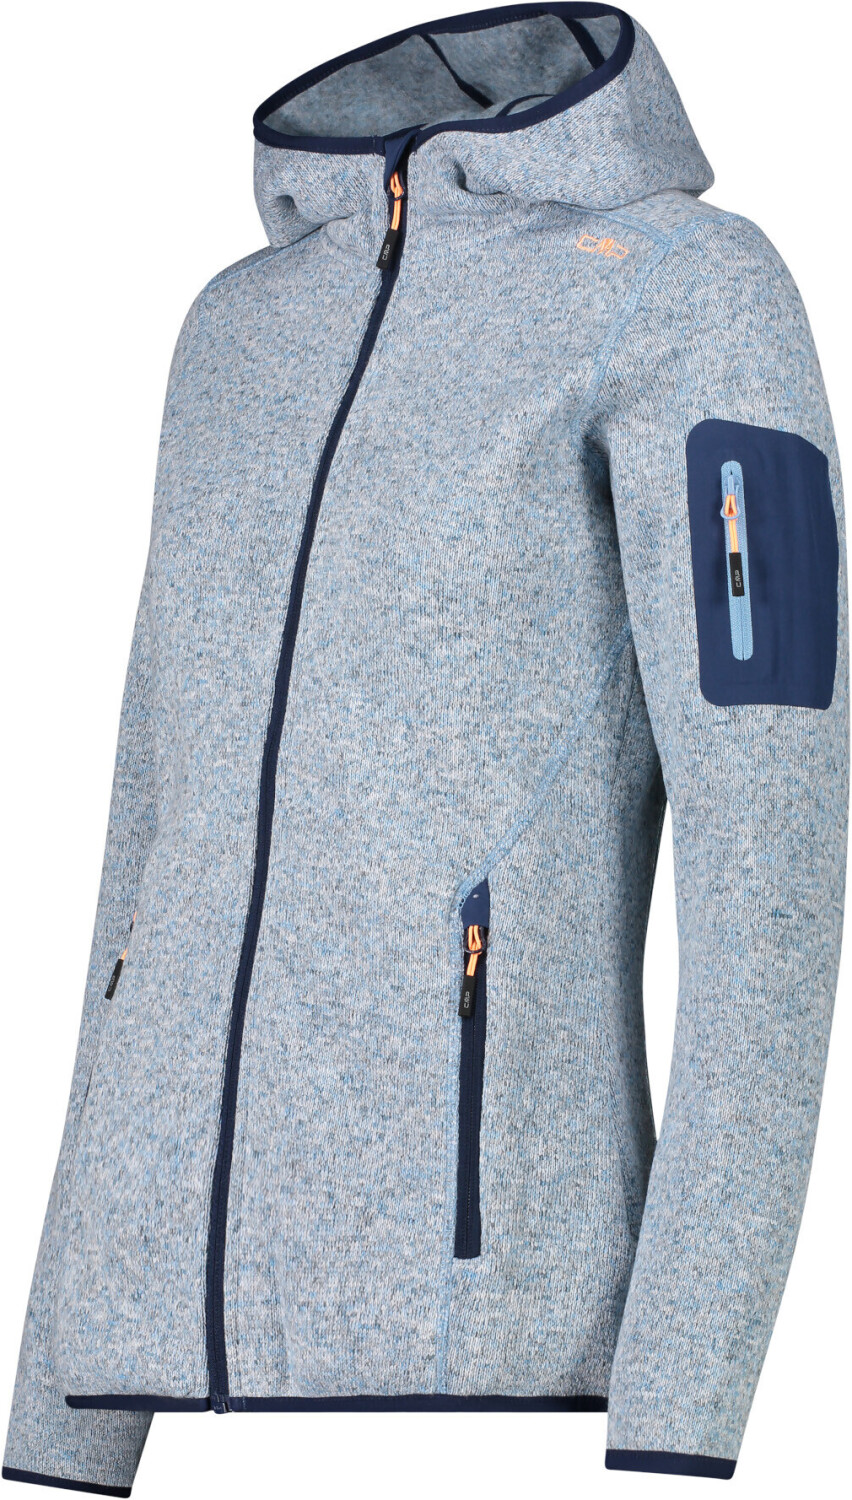 CMP Woman Fleece Jacket Fix Hood (3H19826) cielo/blue ab 41,95 € |  Preisvergleich bei